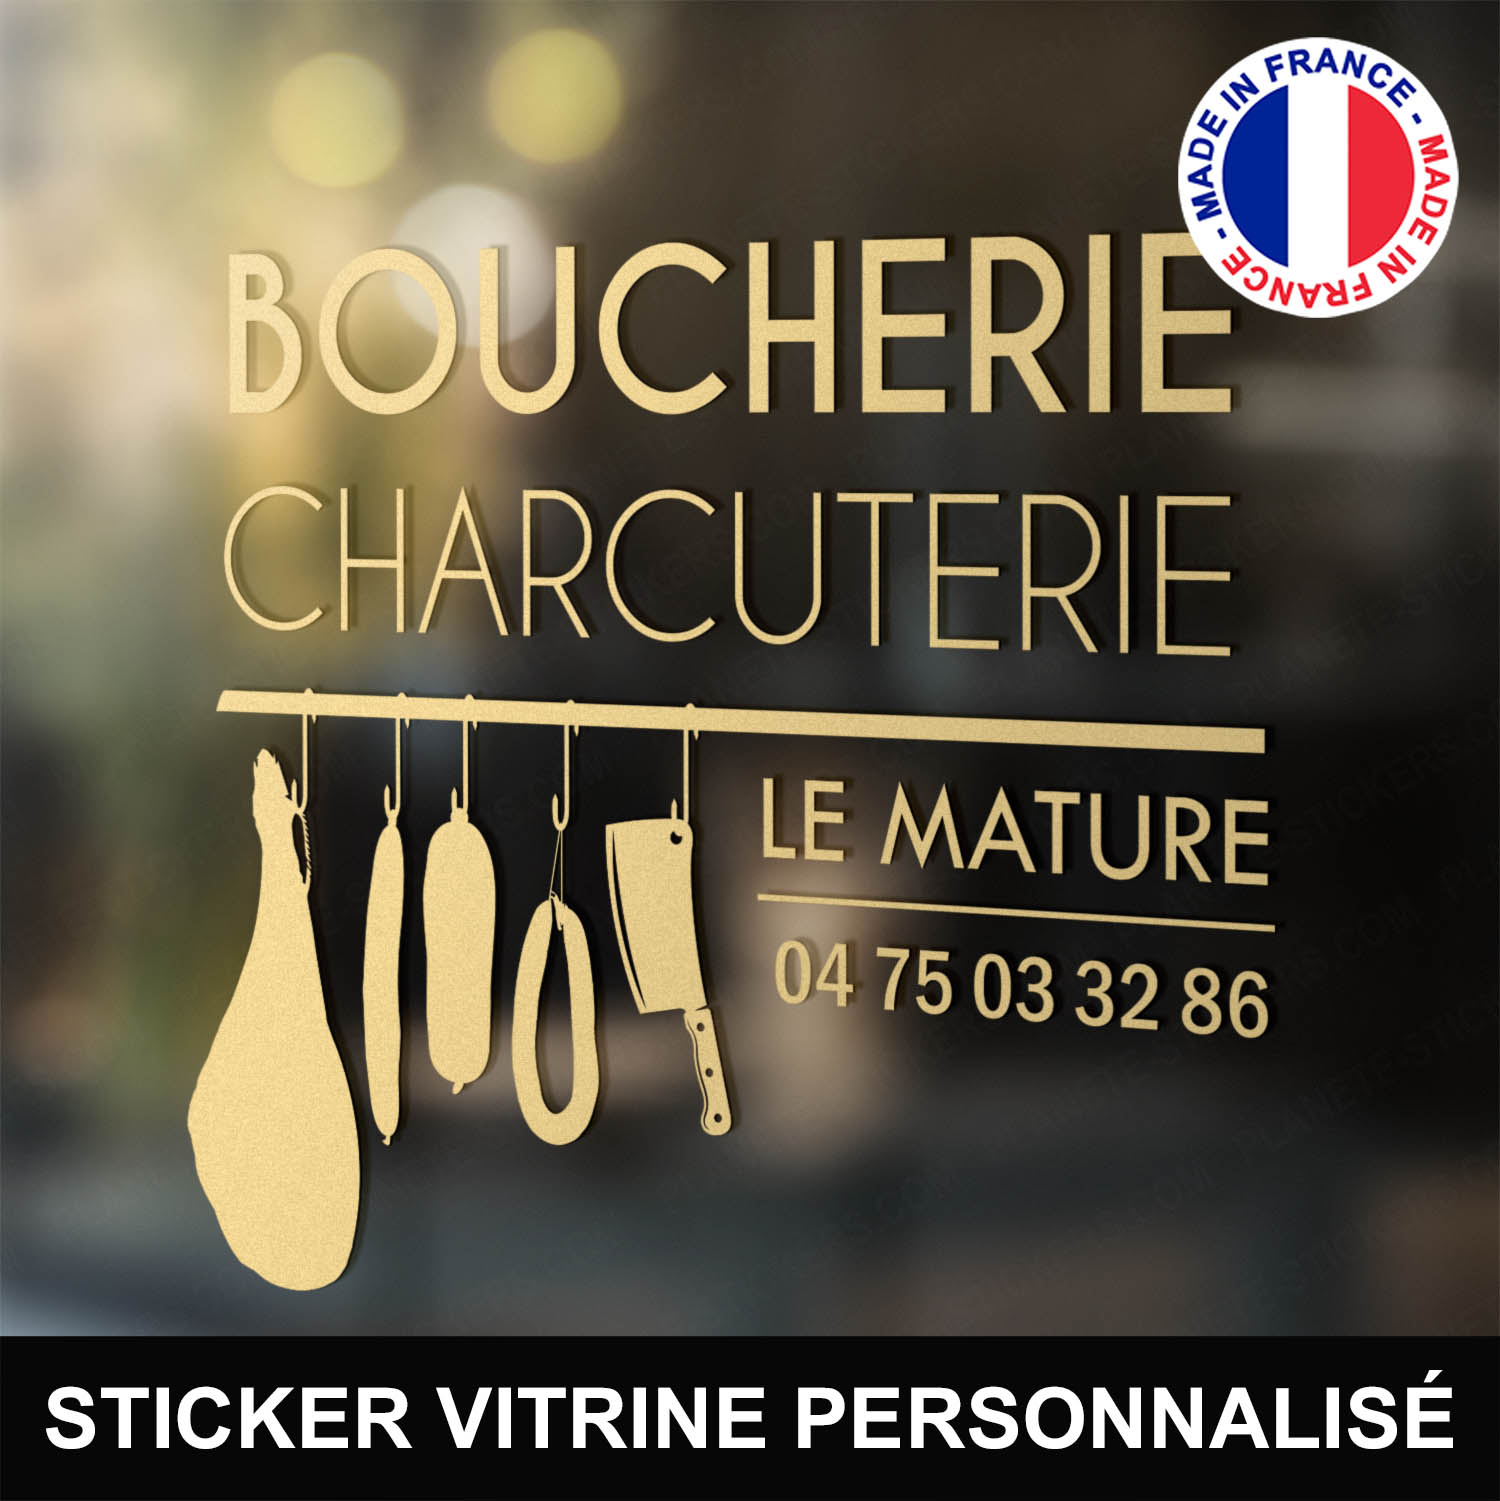 ref3boucherievitrine-stickers-boucherie-charcuterie-vitrine-sticker-personnalisé-autocollant-boutique-pro-boucher-charcutier-professionnel